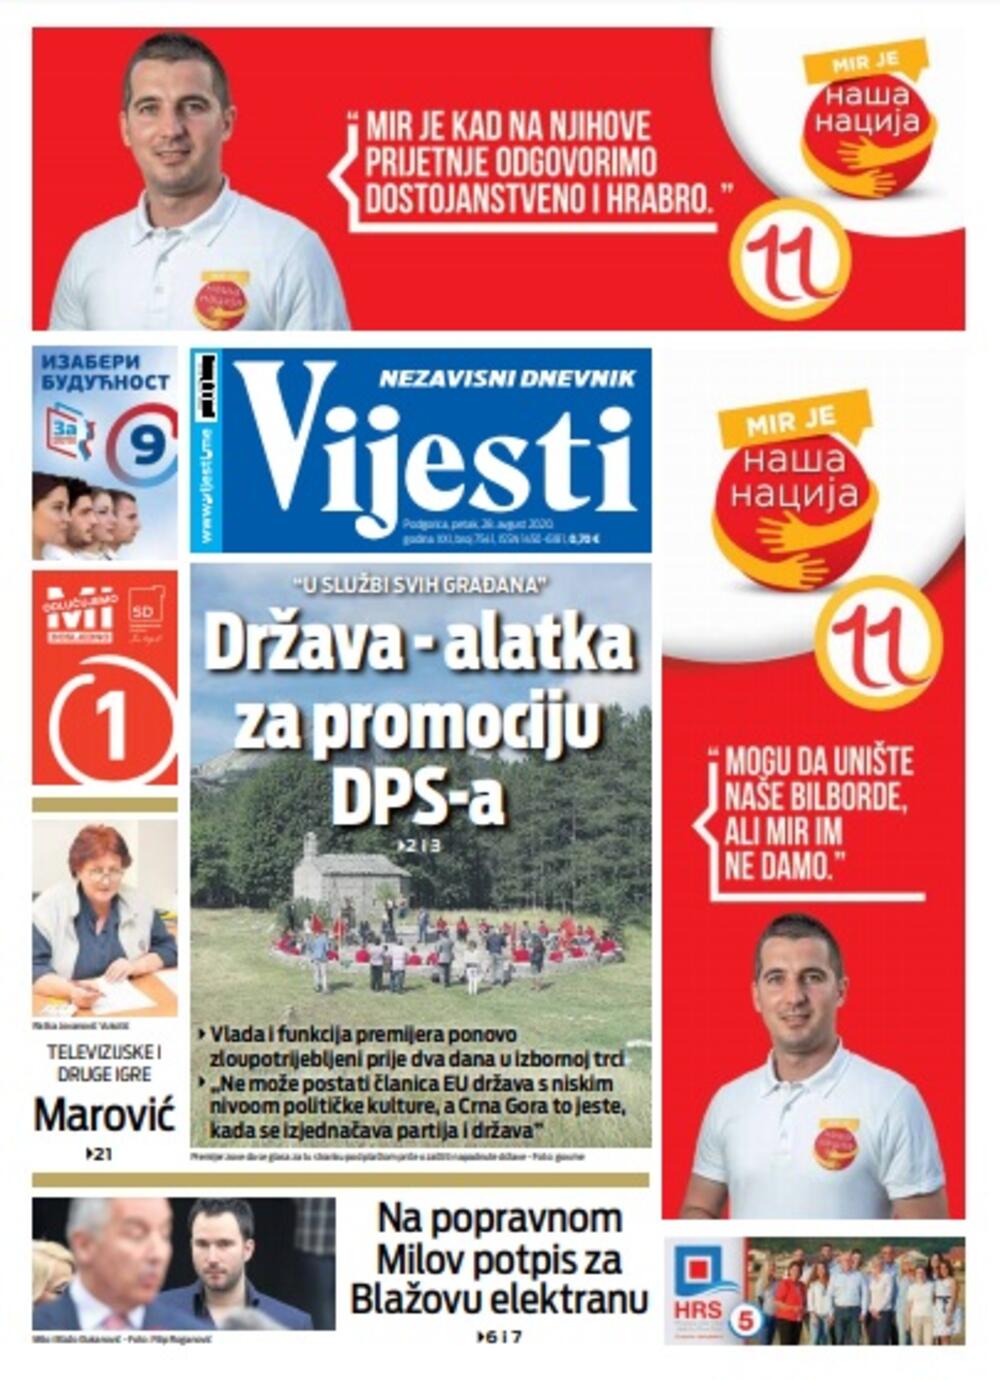 Naslovna strana "Vijesti" za petak 28. avgust 2020. godine, Foto: Vijesti